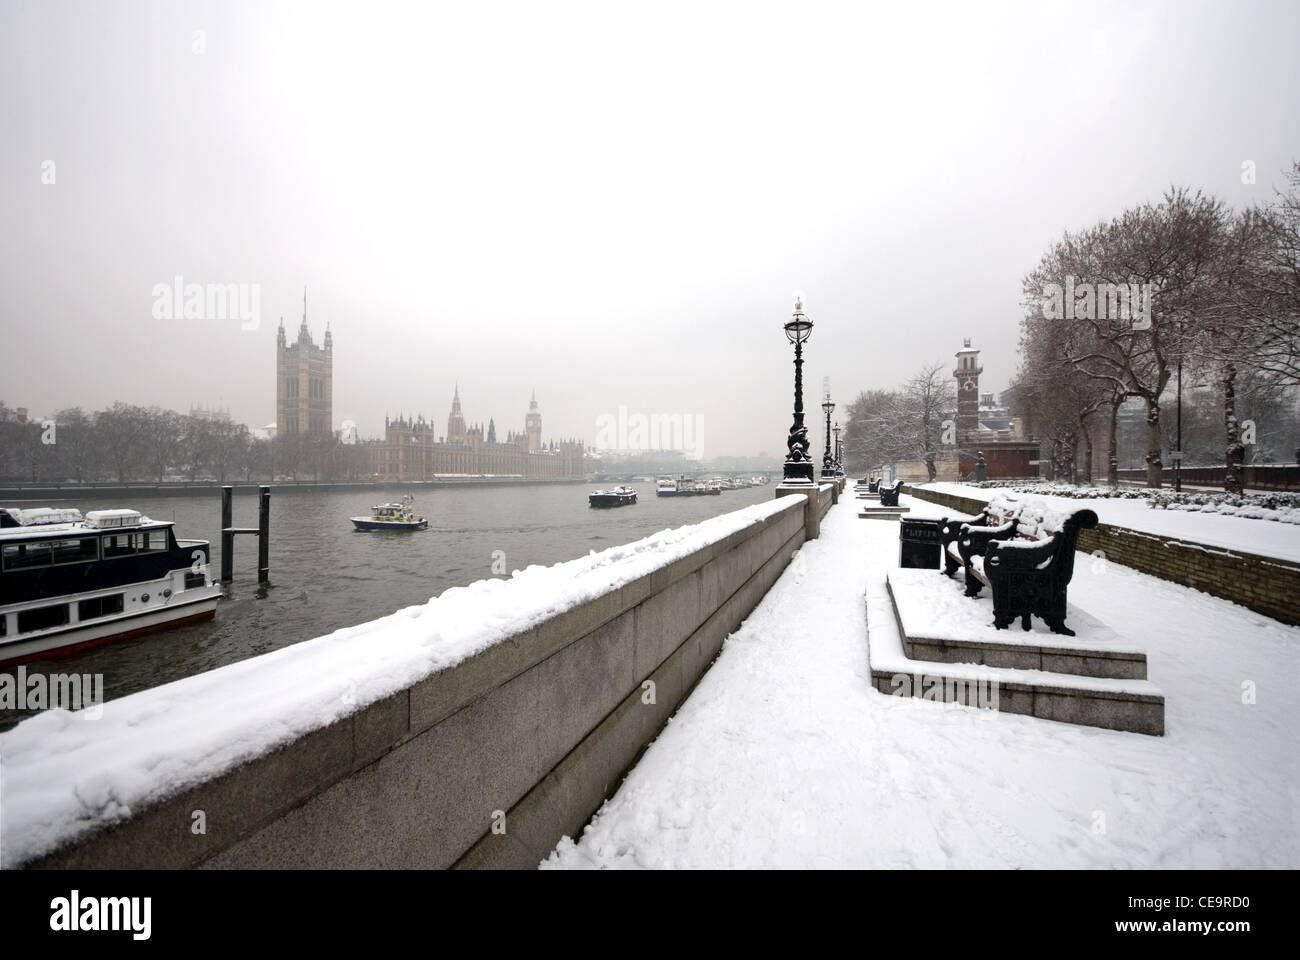 Una vista del fiume Tamigi e il Big Ben, catturare da un passaggio pedonale adiacente al fiume, su un freddo, nevoso, Winter's day Foto Stock